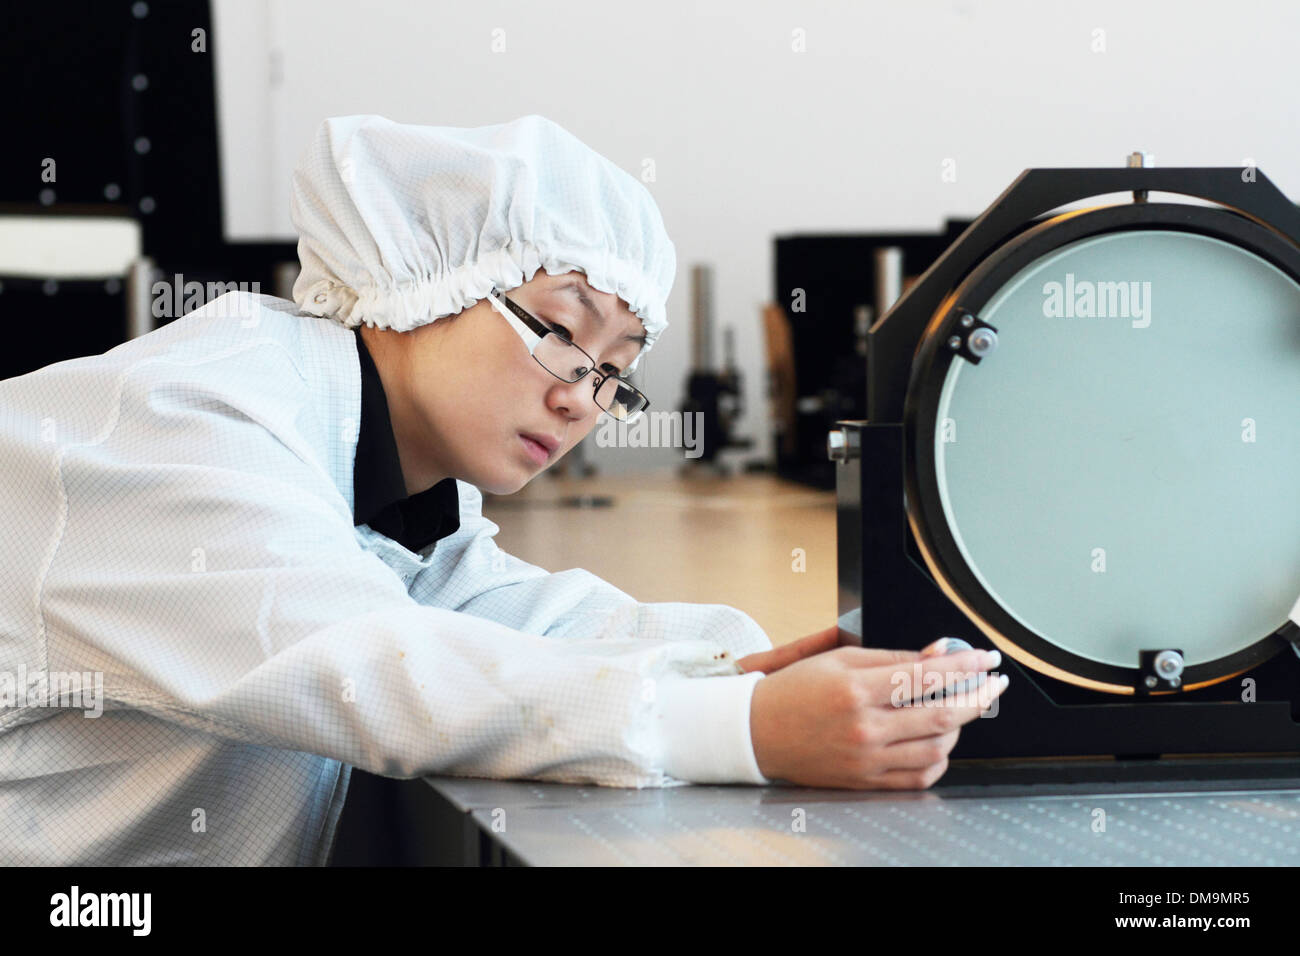 L'Asie une femme scientifique travaille dans un laboratoire de l'holographie avec couche d'installer nouvelle technologie de salle blanche Banque D'Images